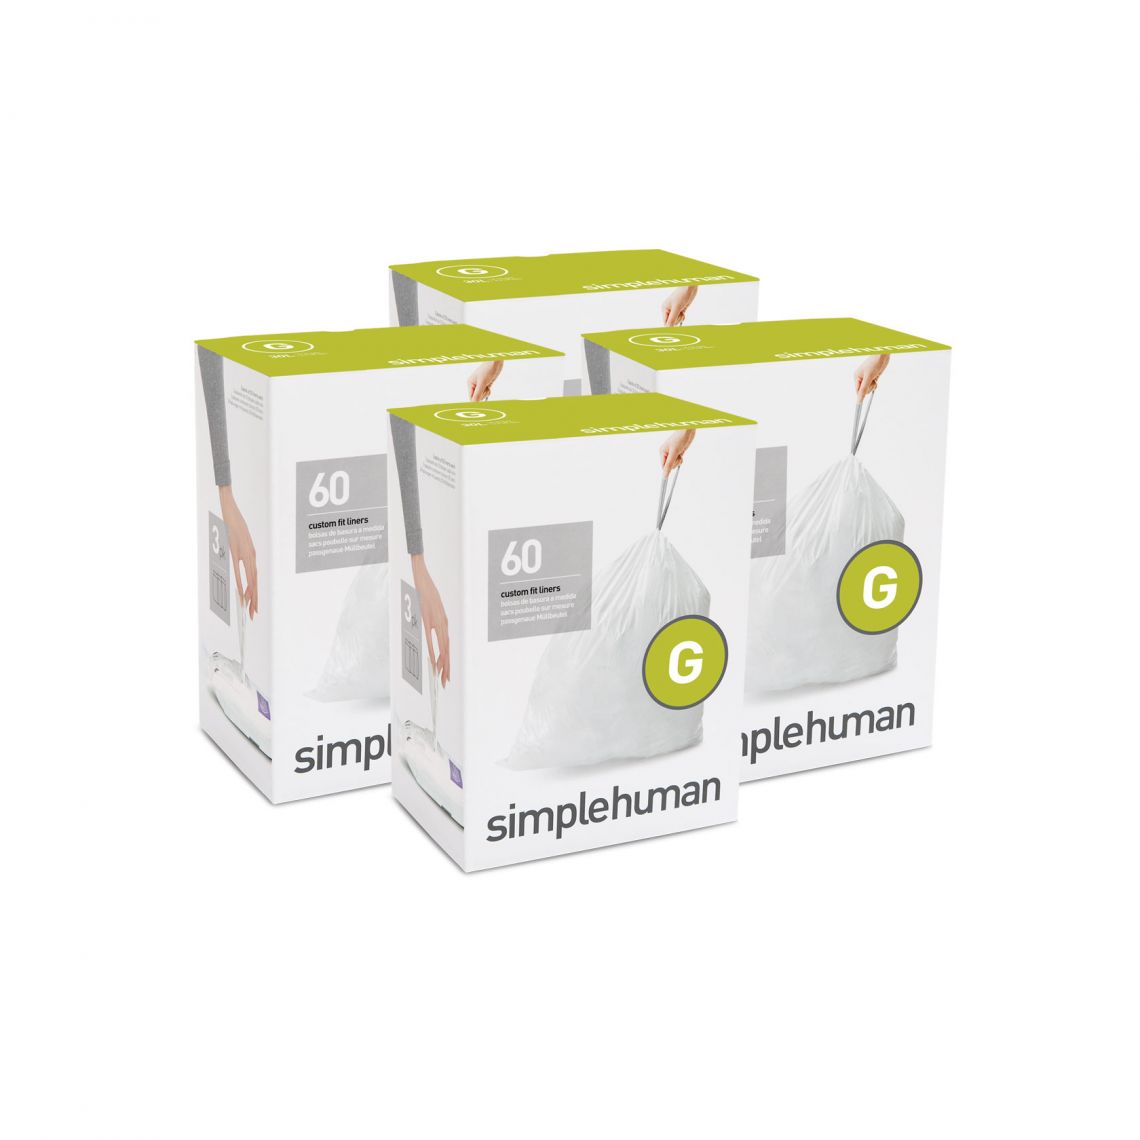 מארז 4 חבילות שקיות אשפה (G) דגם Simplehuman - CW0257 - סימפליומן